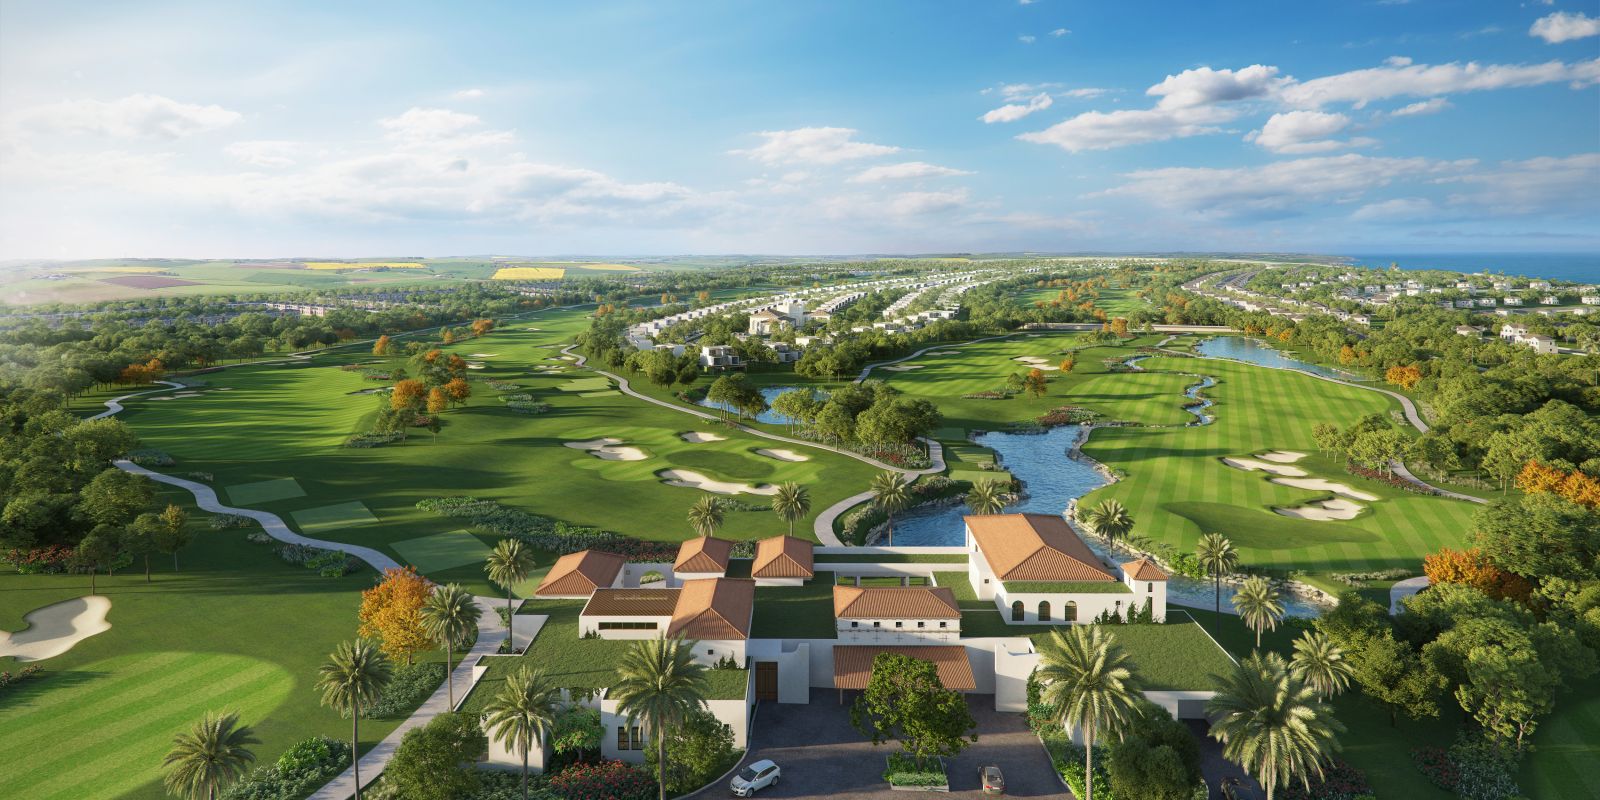 Nova Golf Clubs xây dựng và nâng tầm cơ sở vật chất của sân golf đạt chuẩn quốc tế tại các điểm đến du lịch mà Novaland phát triển (Hình: Sân Golf tại NovaWorld Phan Thiet)